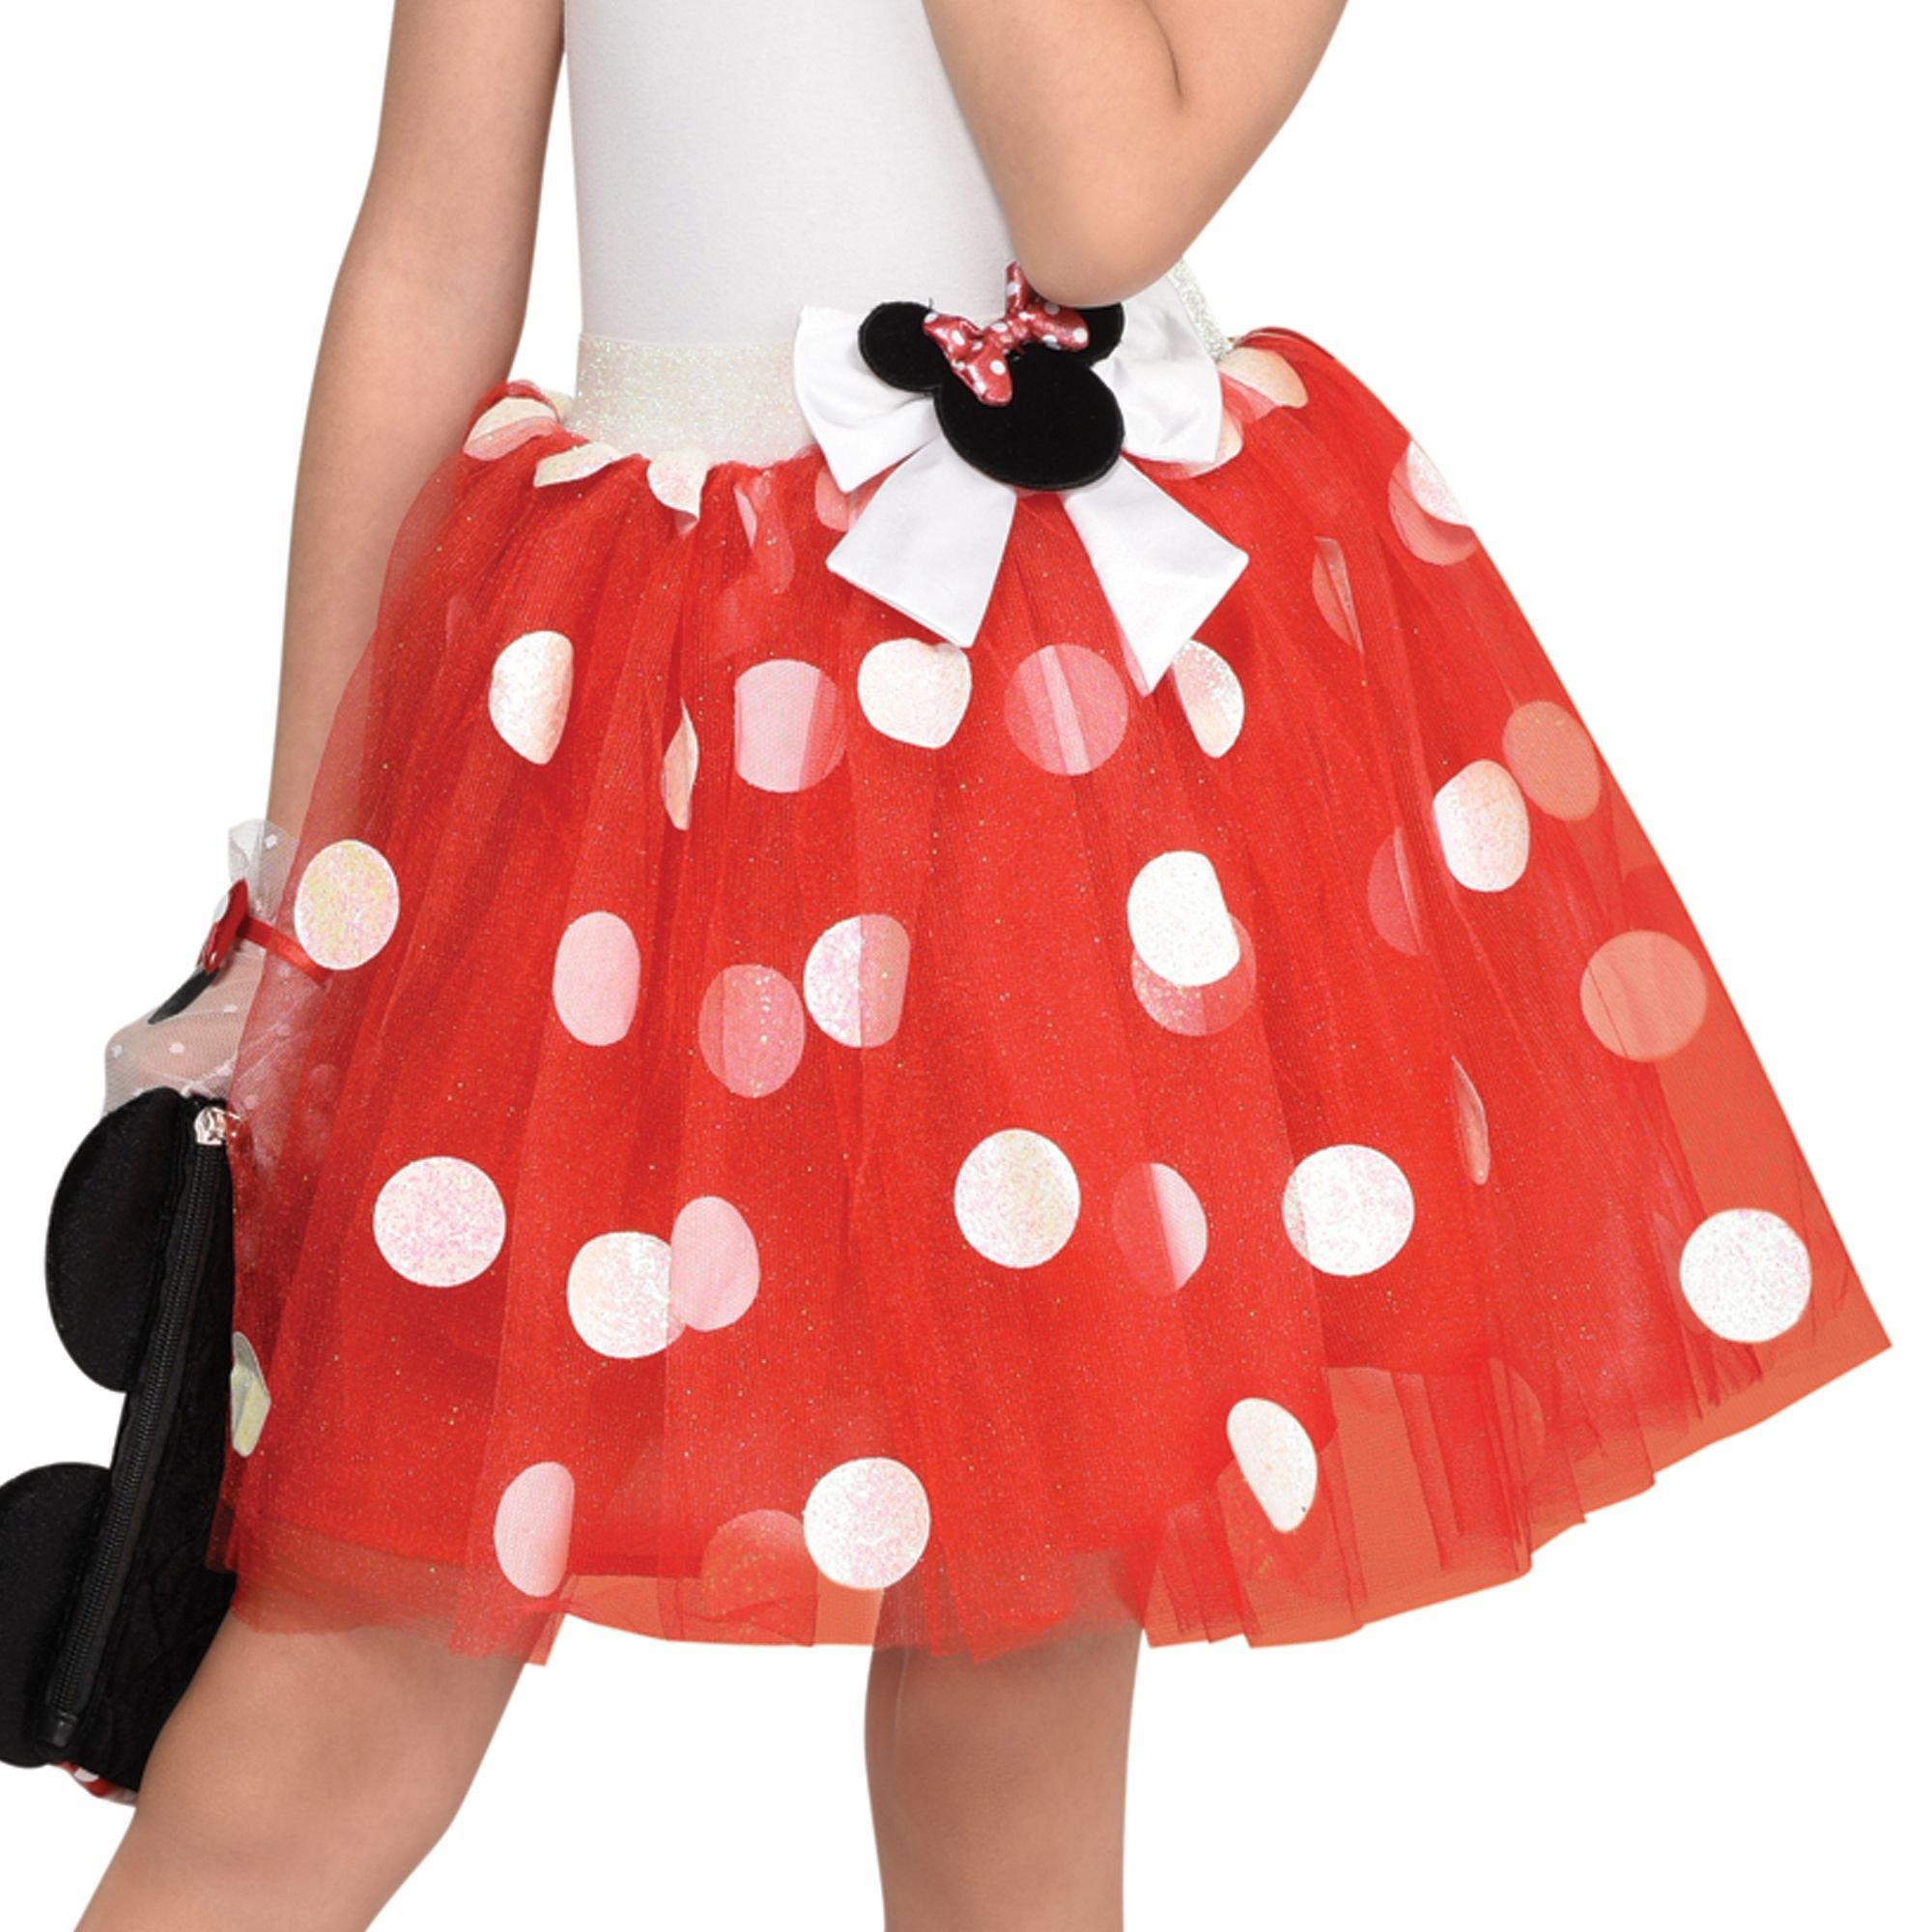 Girls Polka Dot Mouse Red Tutu Skirt Costume, Ships Fast